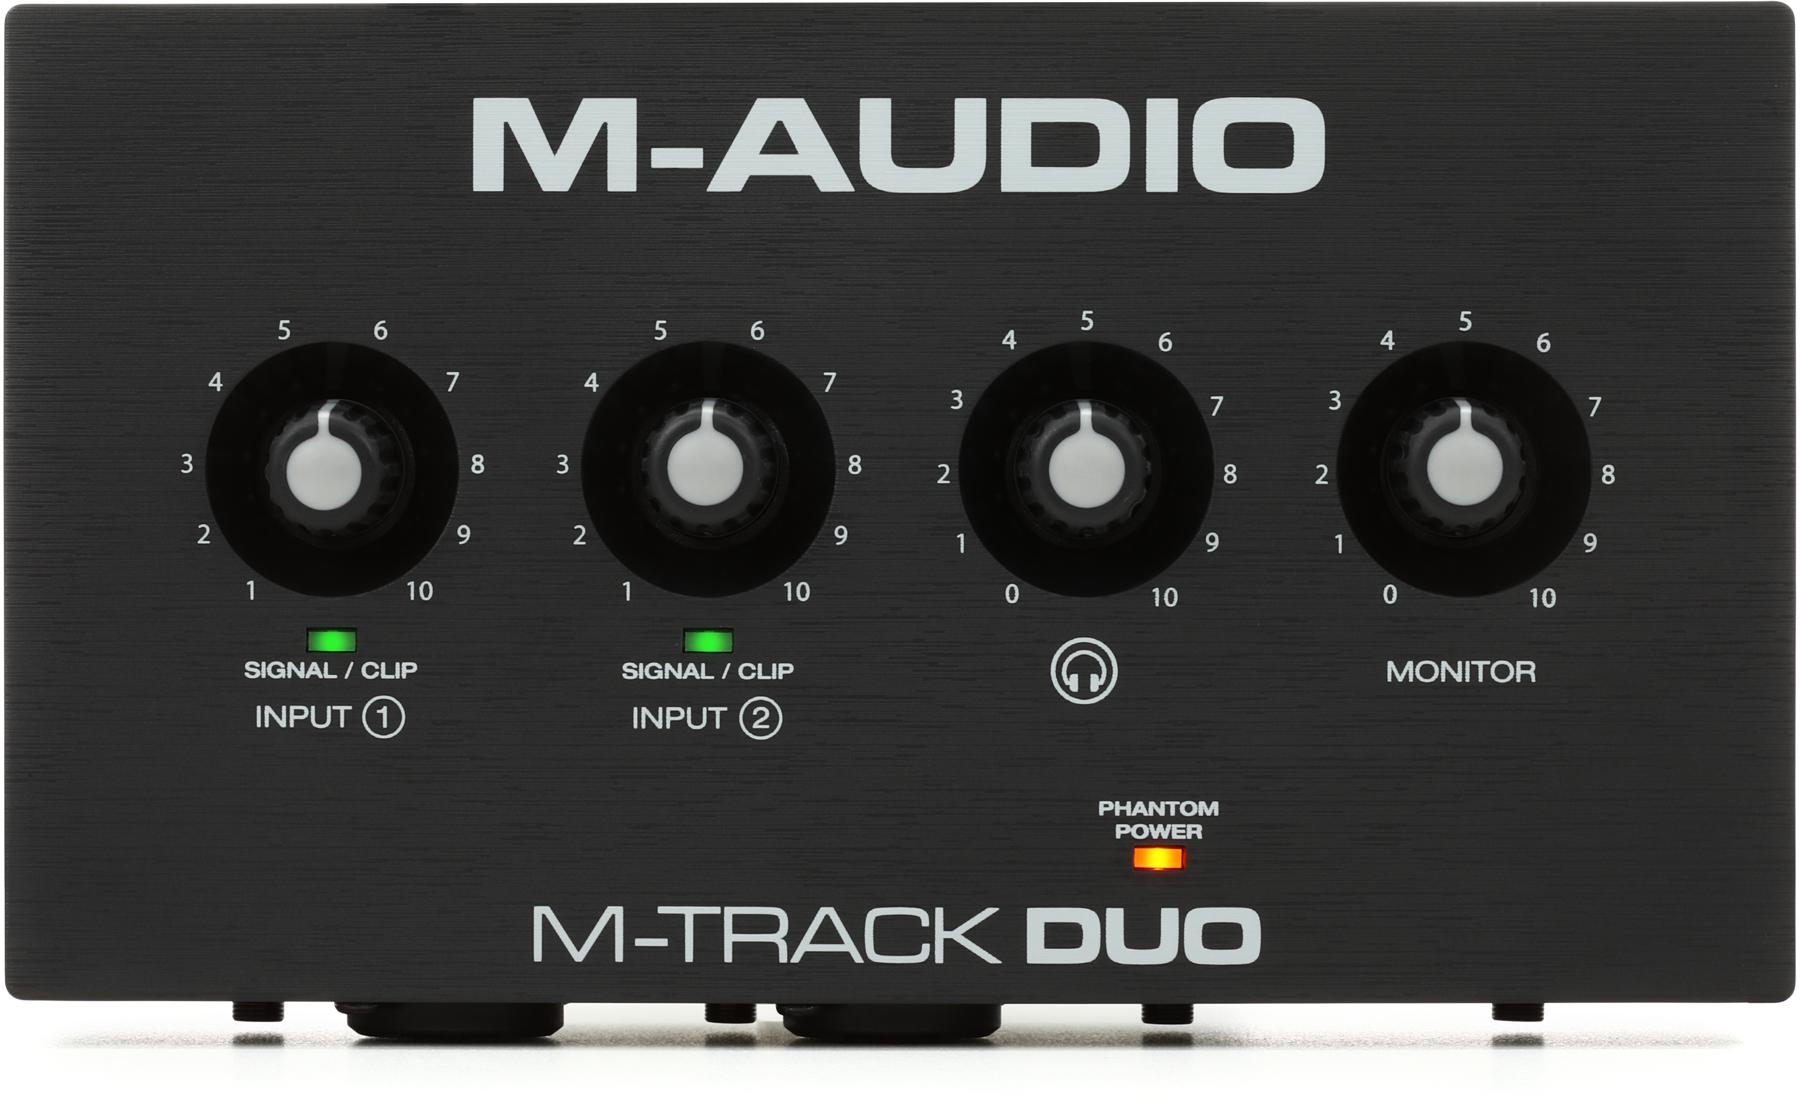 4. M-Audio M-Track DUO